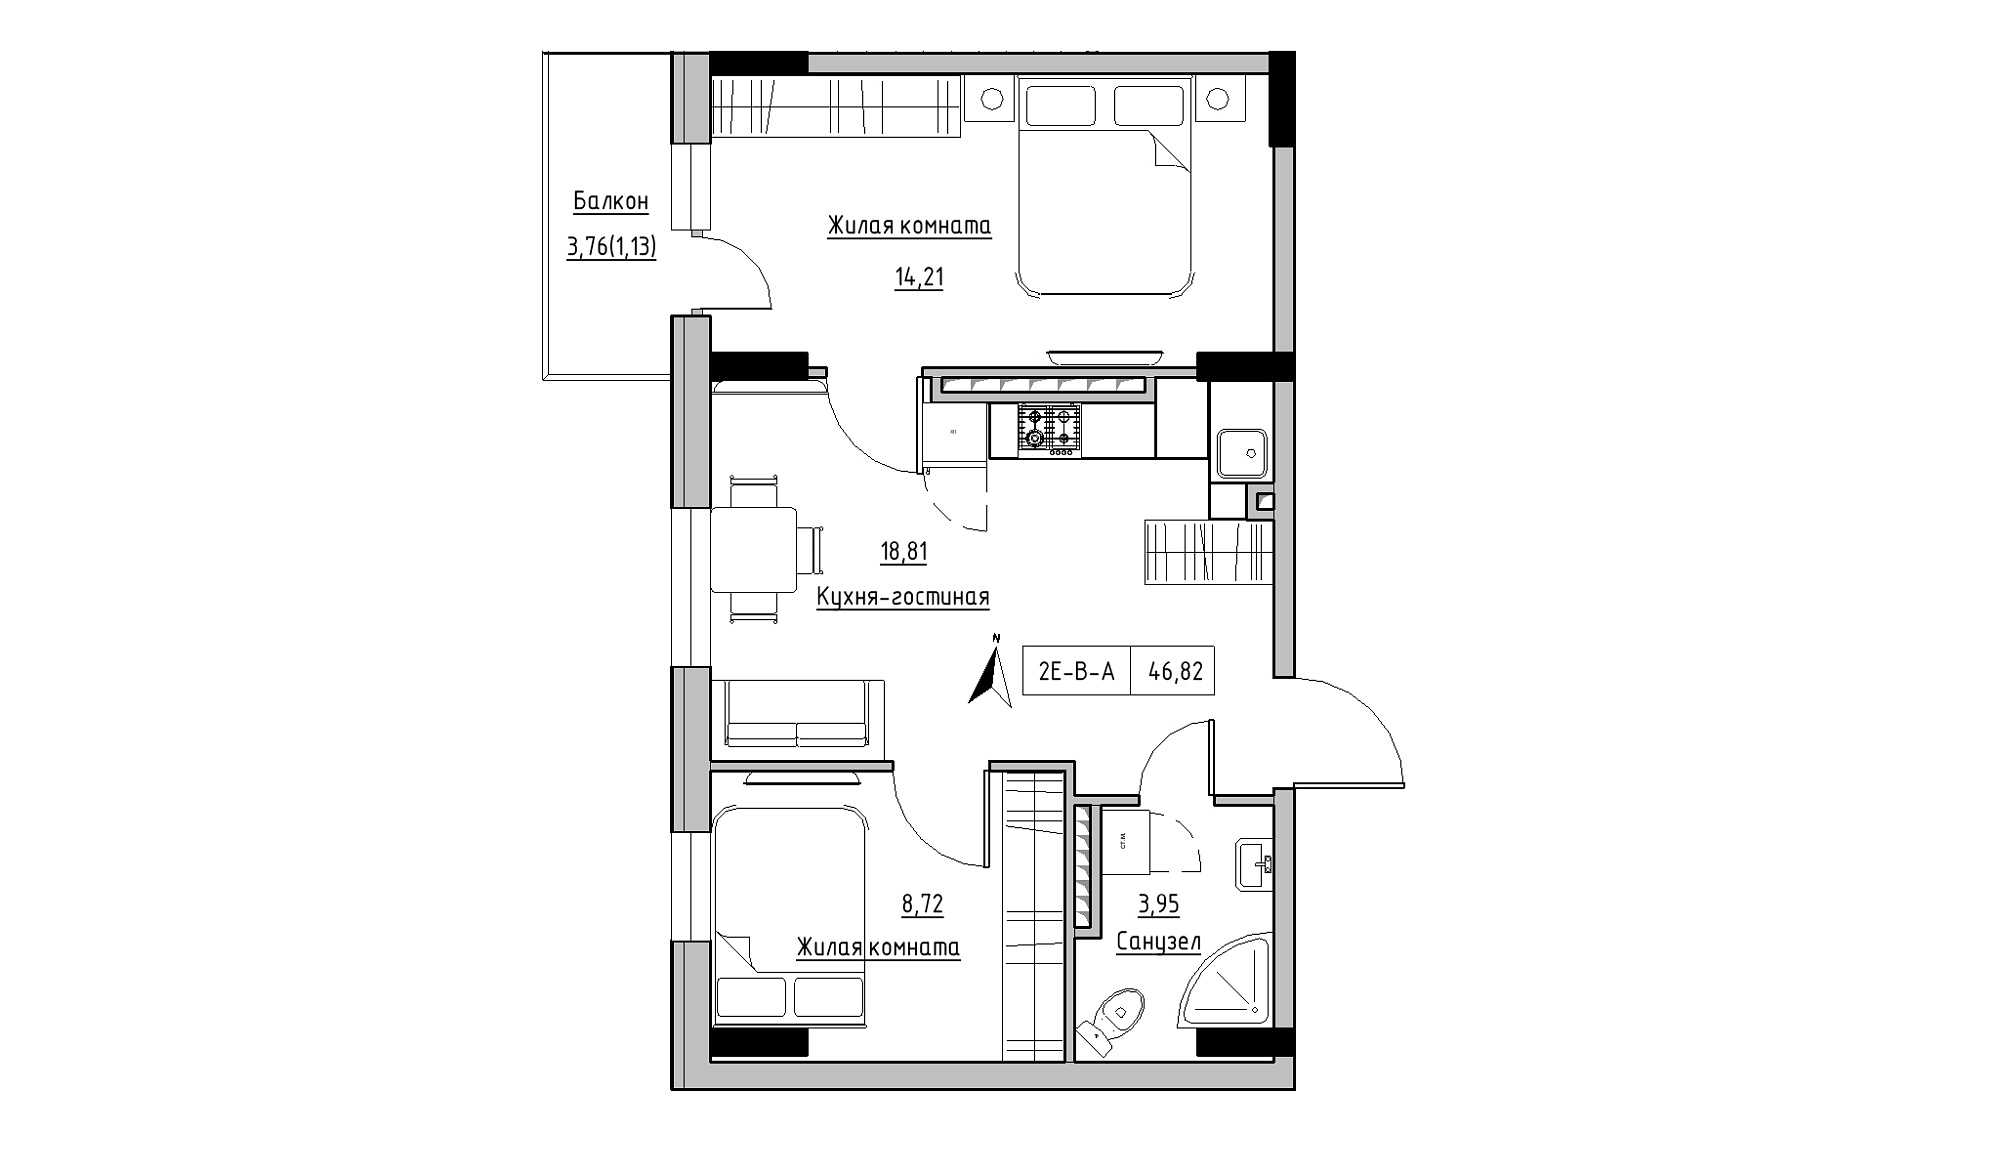 Планировка 2-к квартира площей 46.82м2, KS-025-06/0003.